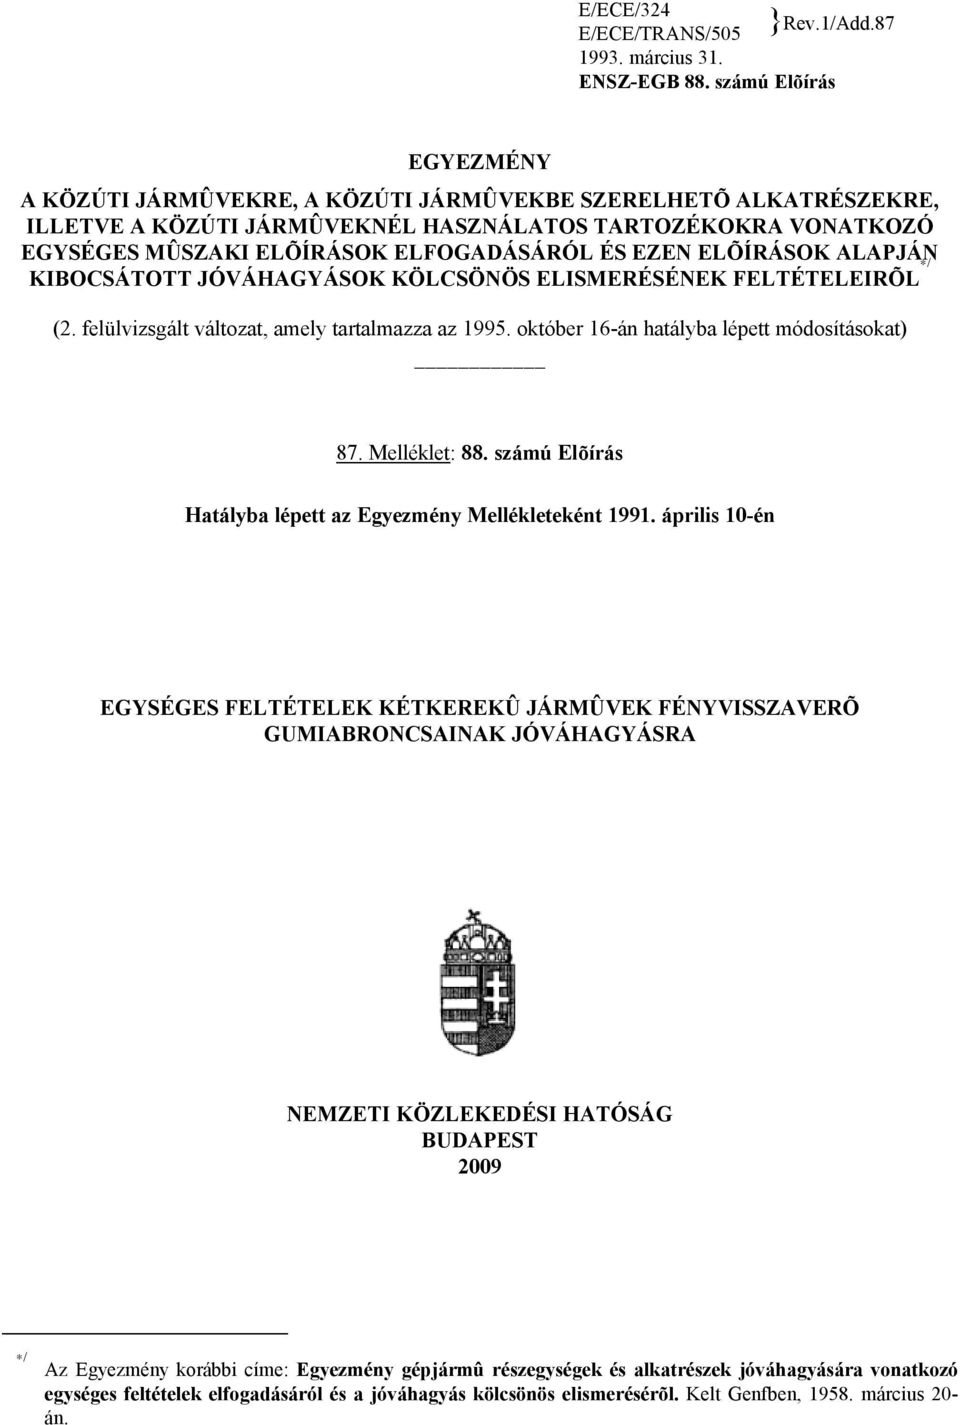 EZEN ELÕÍRÁSOK ALAPJÁN KIBOCSÁTOTT JÓVÁHAGYÁSOK KÖLCSÖNÖS ELISMERÉSÉNEK FELTÉTELEIRÕL / (2. felülvizsgált változat, amely tartalmazza az 1995. október 16-án hatályba lépett módosításokat) 87.